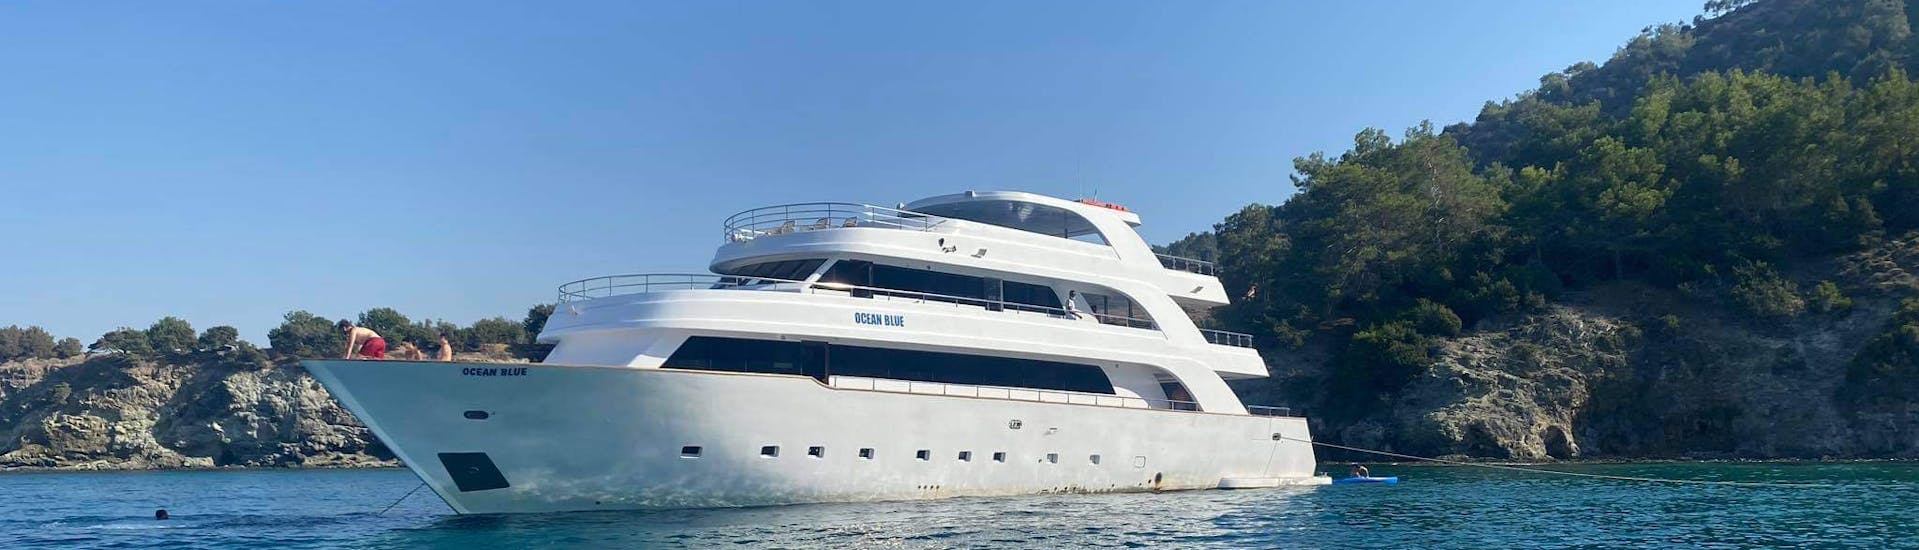 Immagine dell'imbarcazione utilizzata per la gita in yacht di lusso ai Bagni di Afrodite e alla Laguna Blu con Paphos Sea Cruises Cyprus.